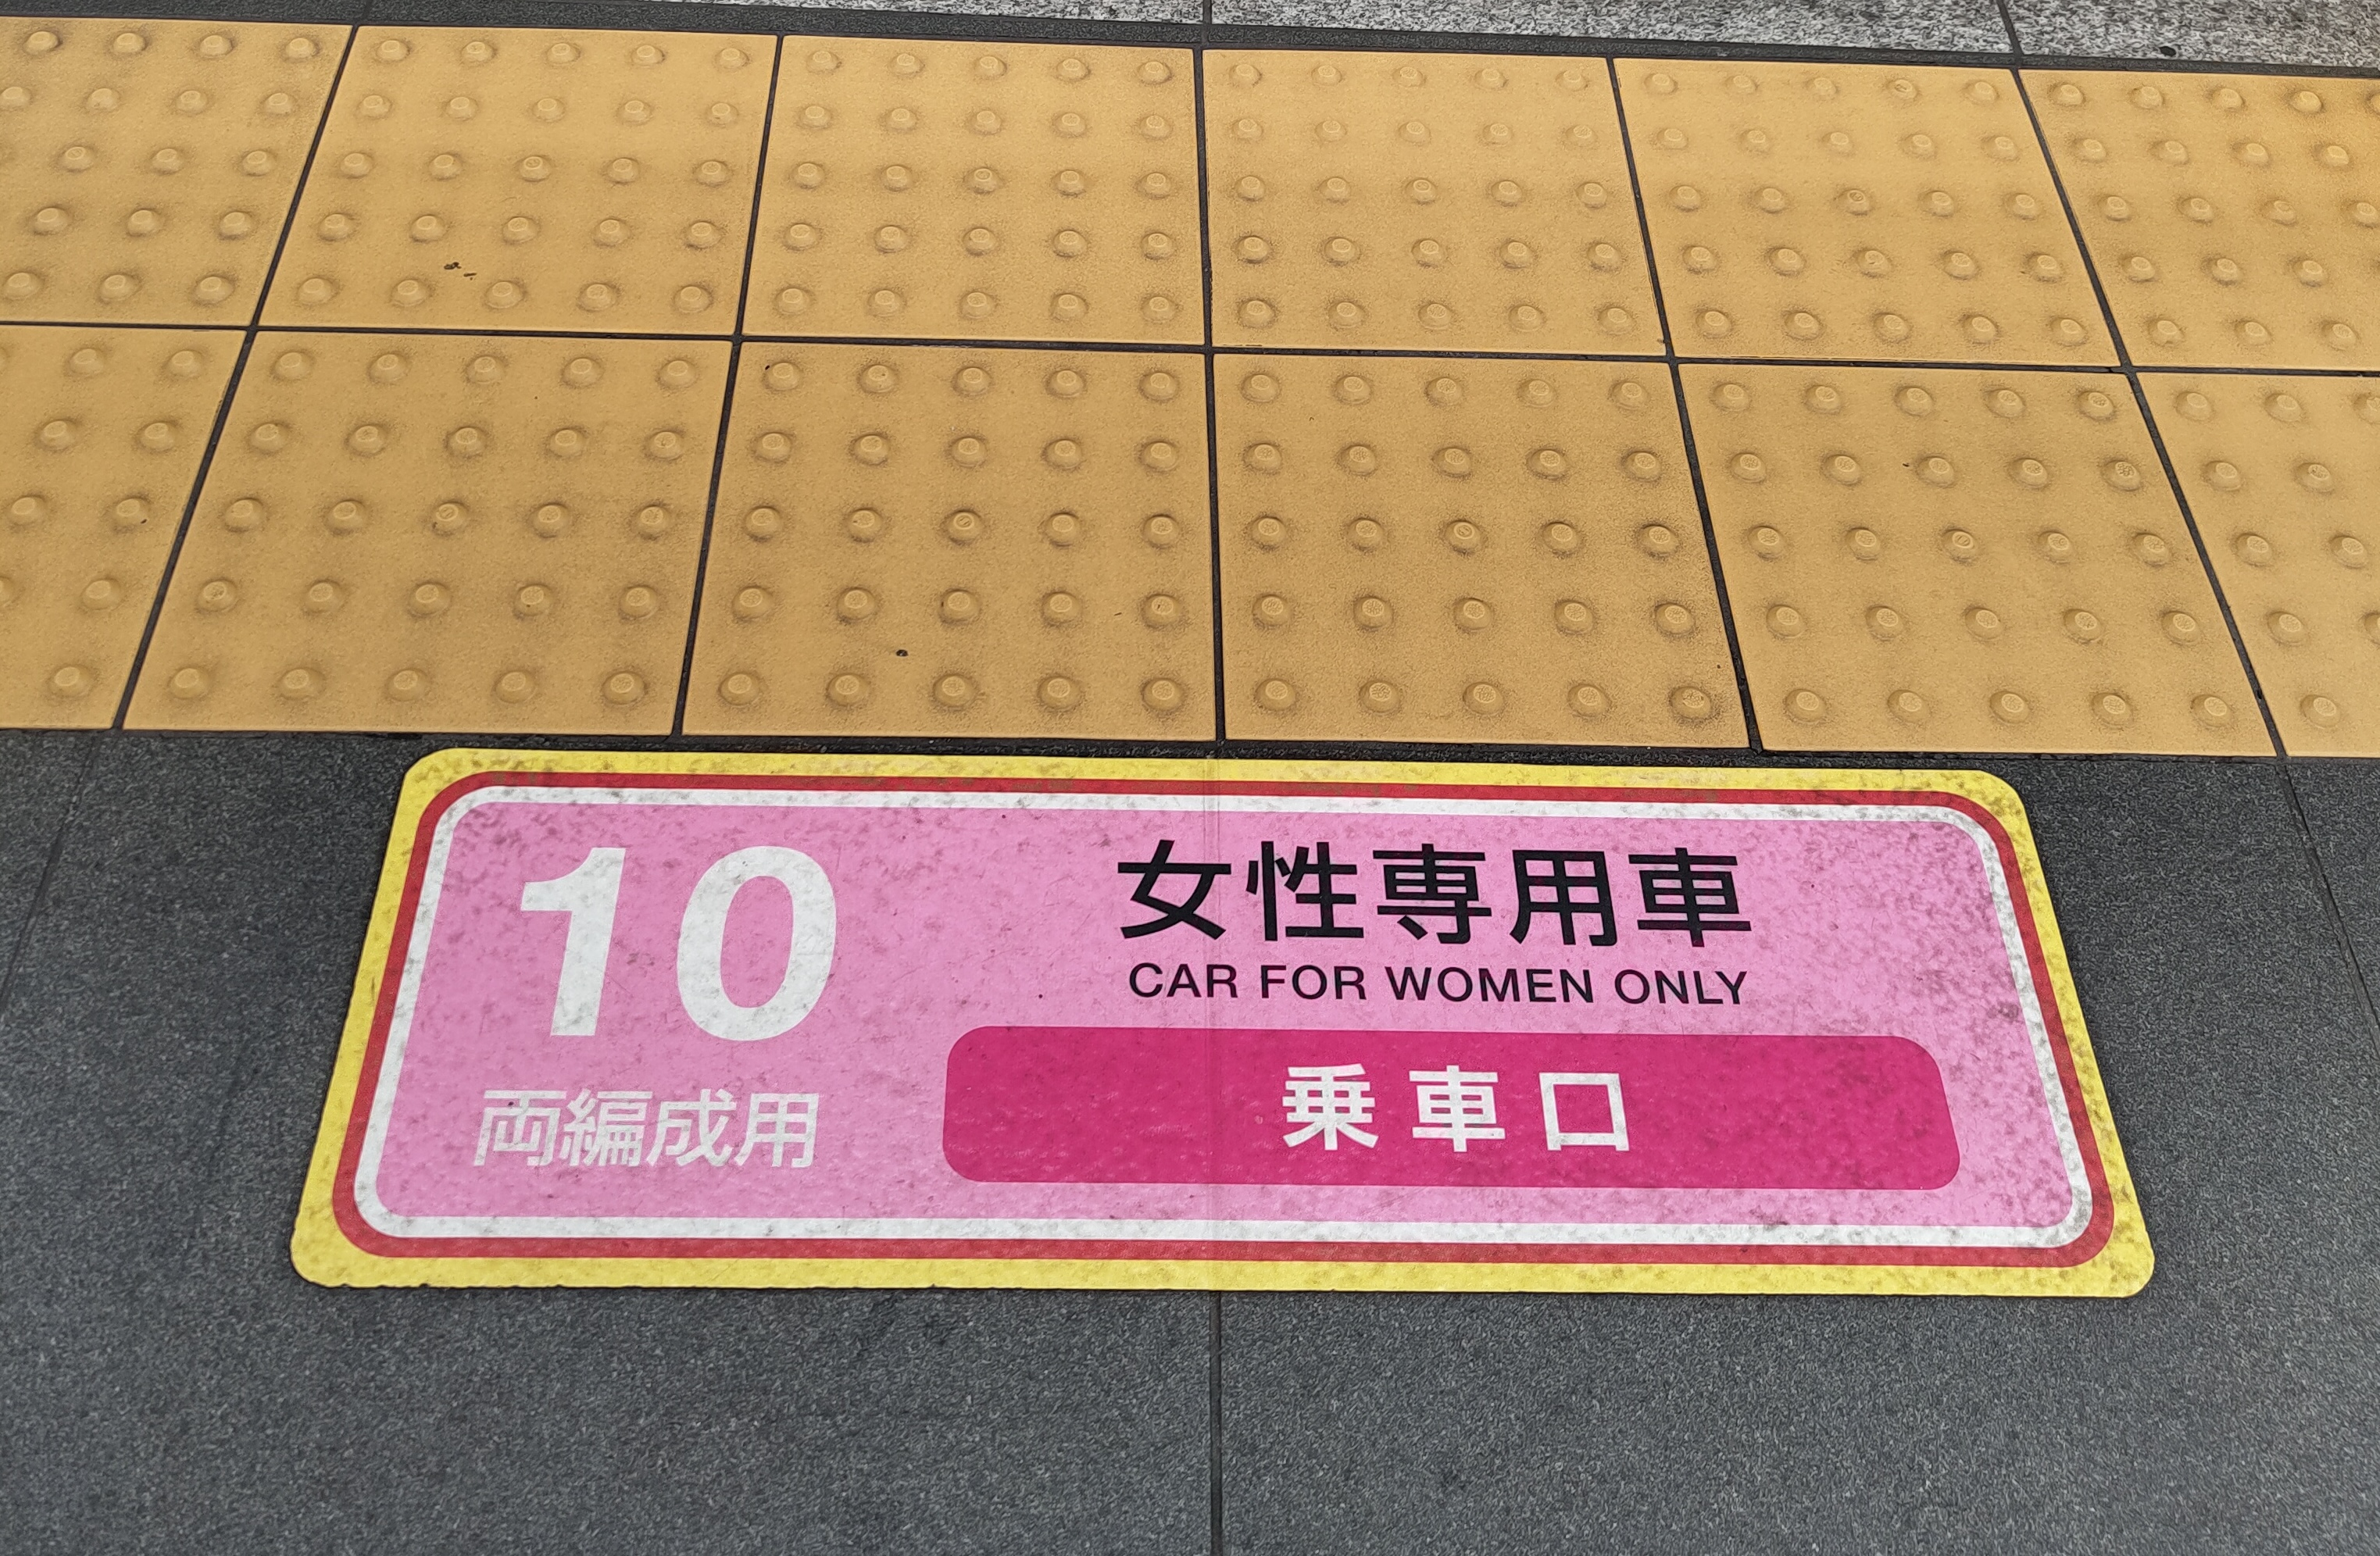 Rosa Aufkleber auf dem Boden des Bahnsteigs auf dem "Car for women only" steht.